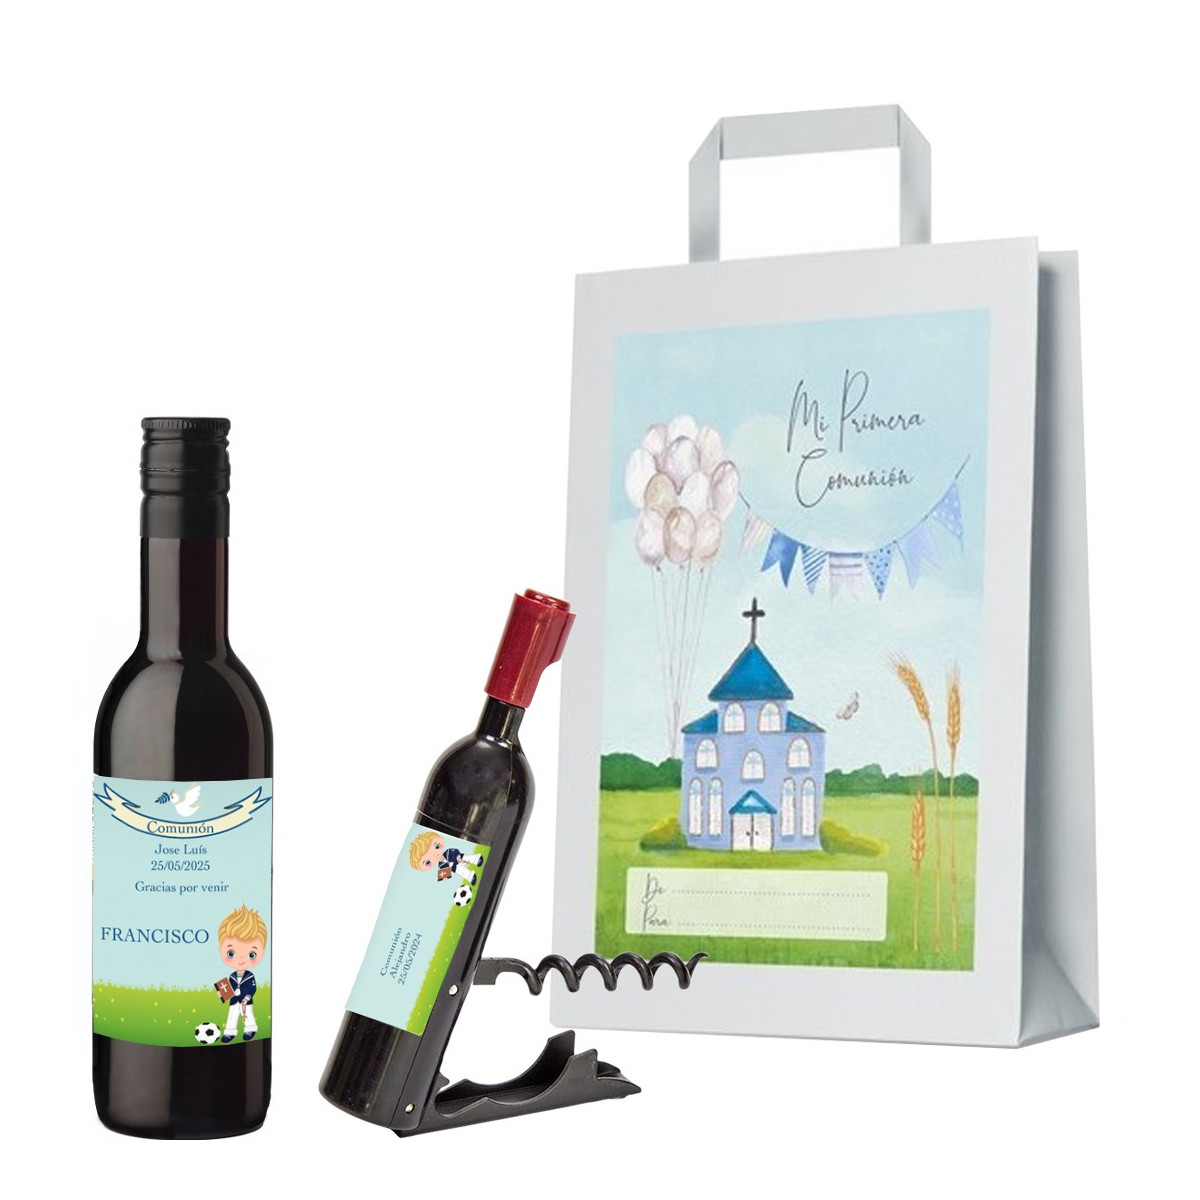 Garrafa de vinho personalizada e saca rolhas com nome do convidado nome da criança e data na sacola de presente da comunhão